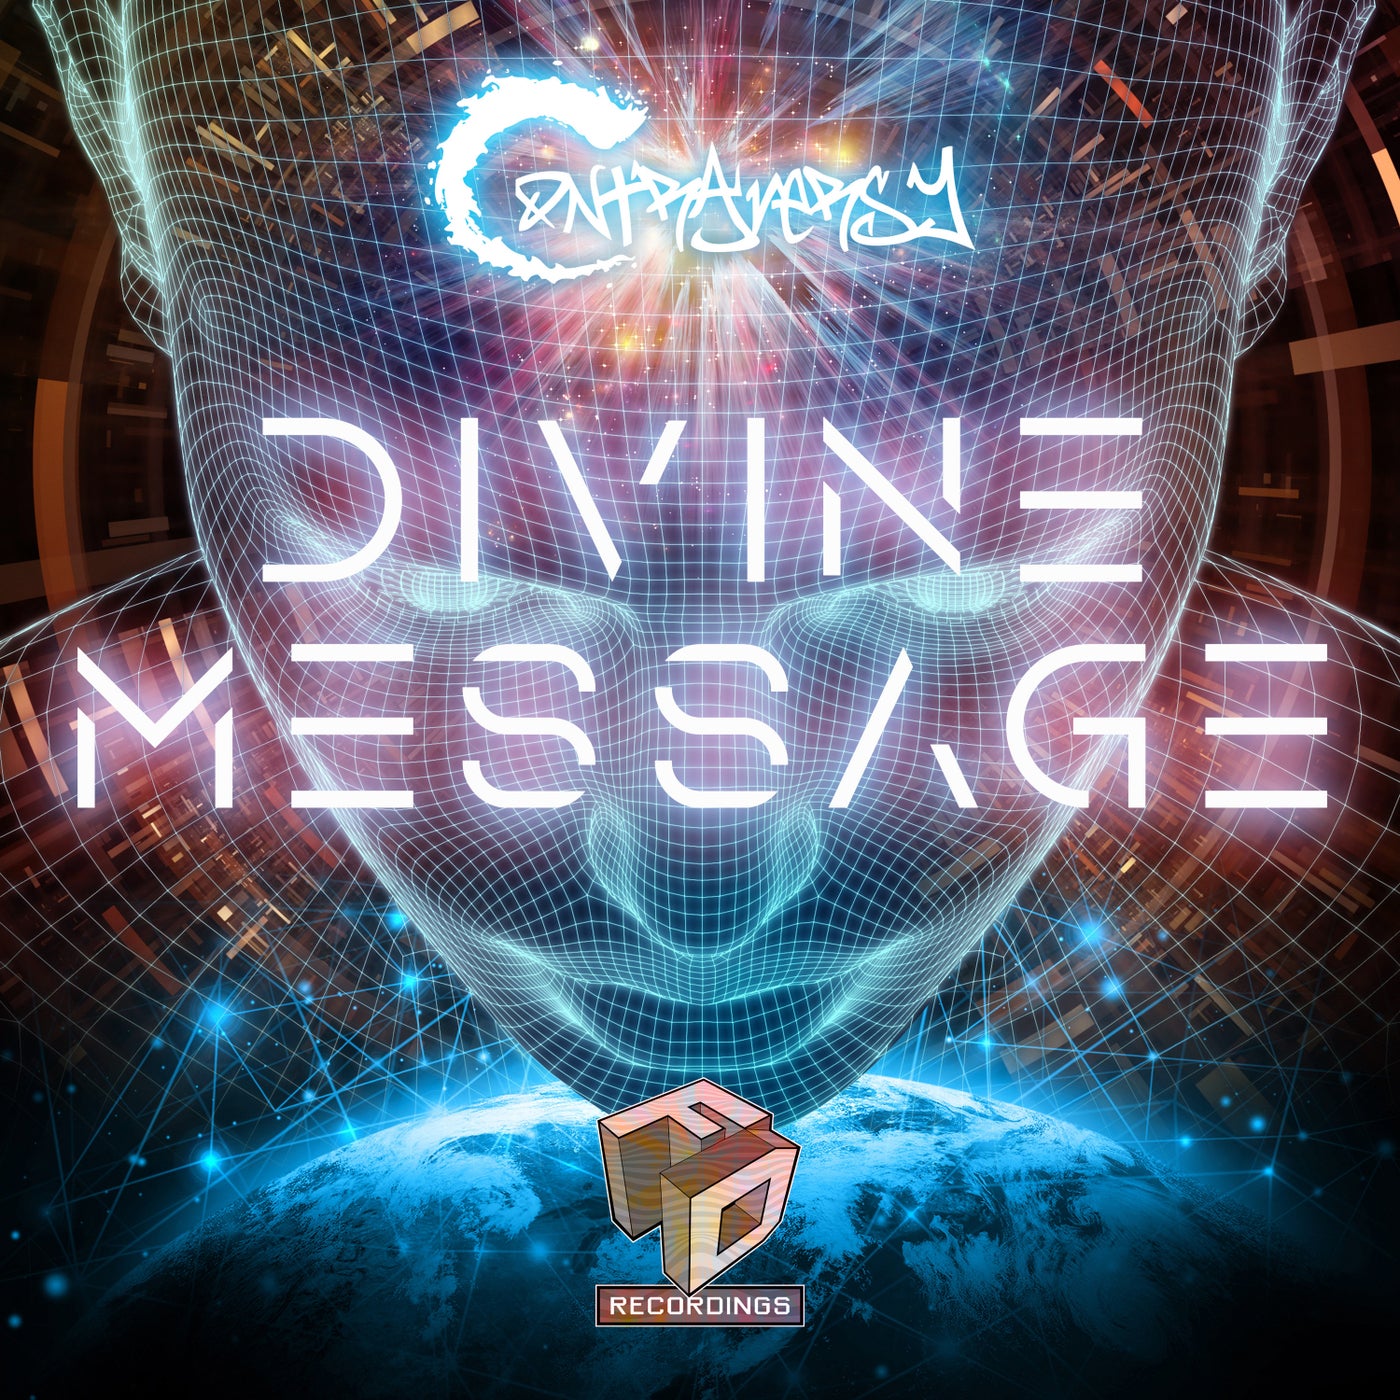 Divine Message